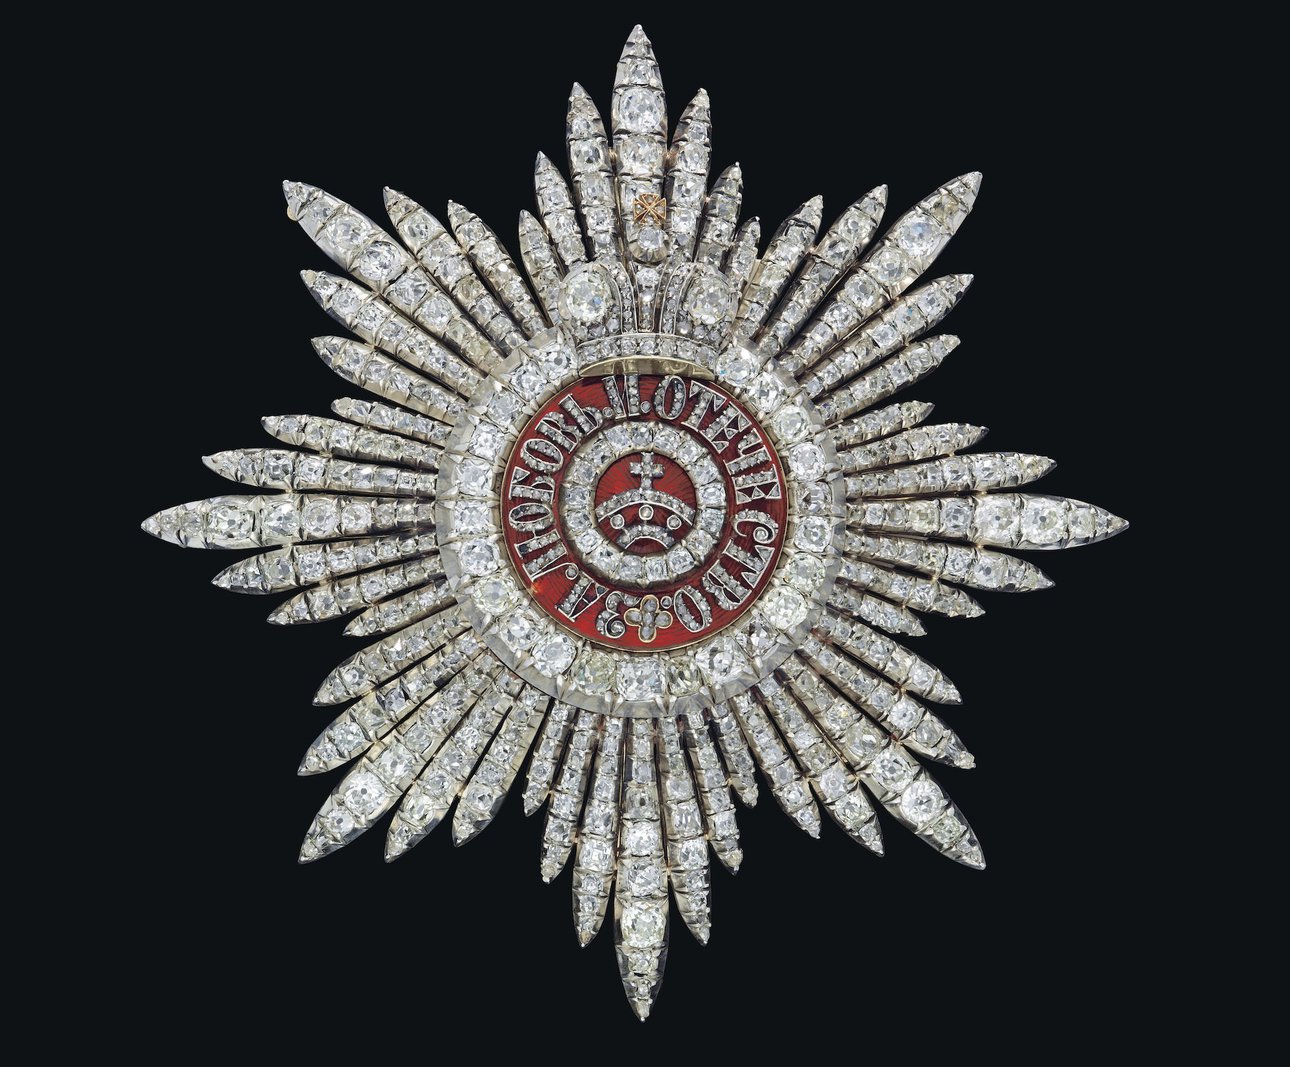 Звезда ордена Святой Екатерины первой степени. Продано на Christie's за £173 тыс.